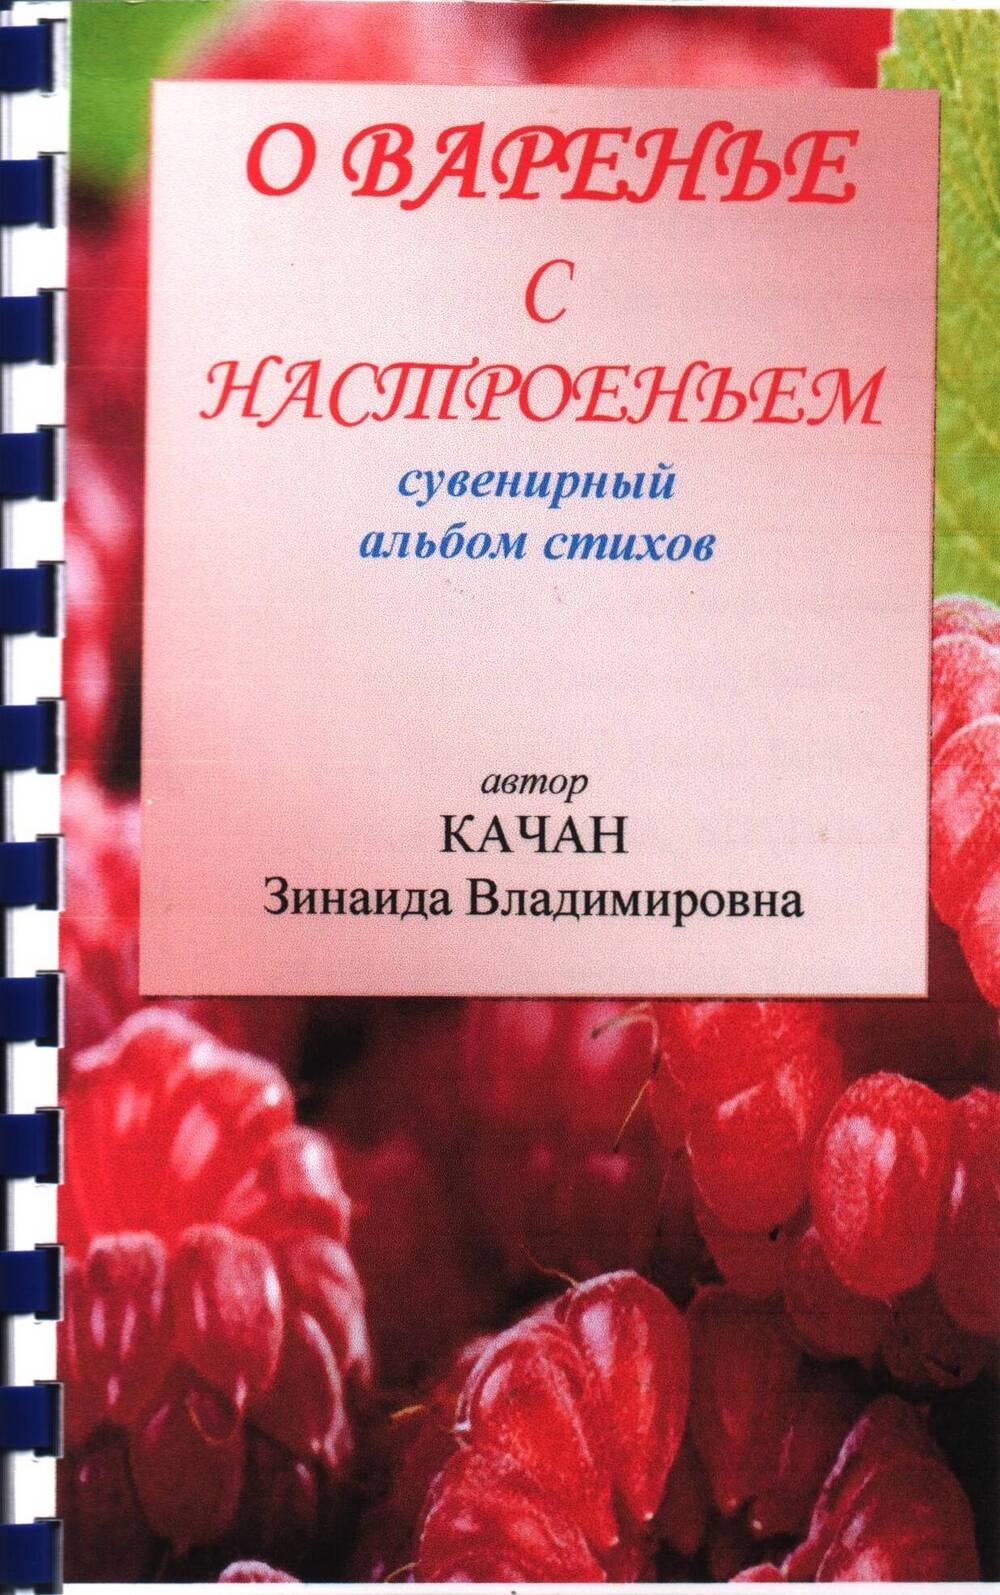 Альбом стихов сувенирный «О варенье с настроеньем» автор Качан Зинаида Владимировна.